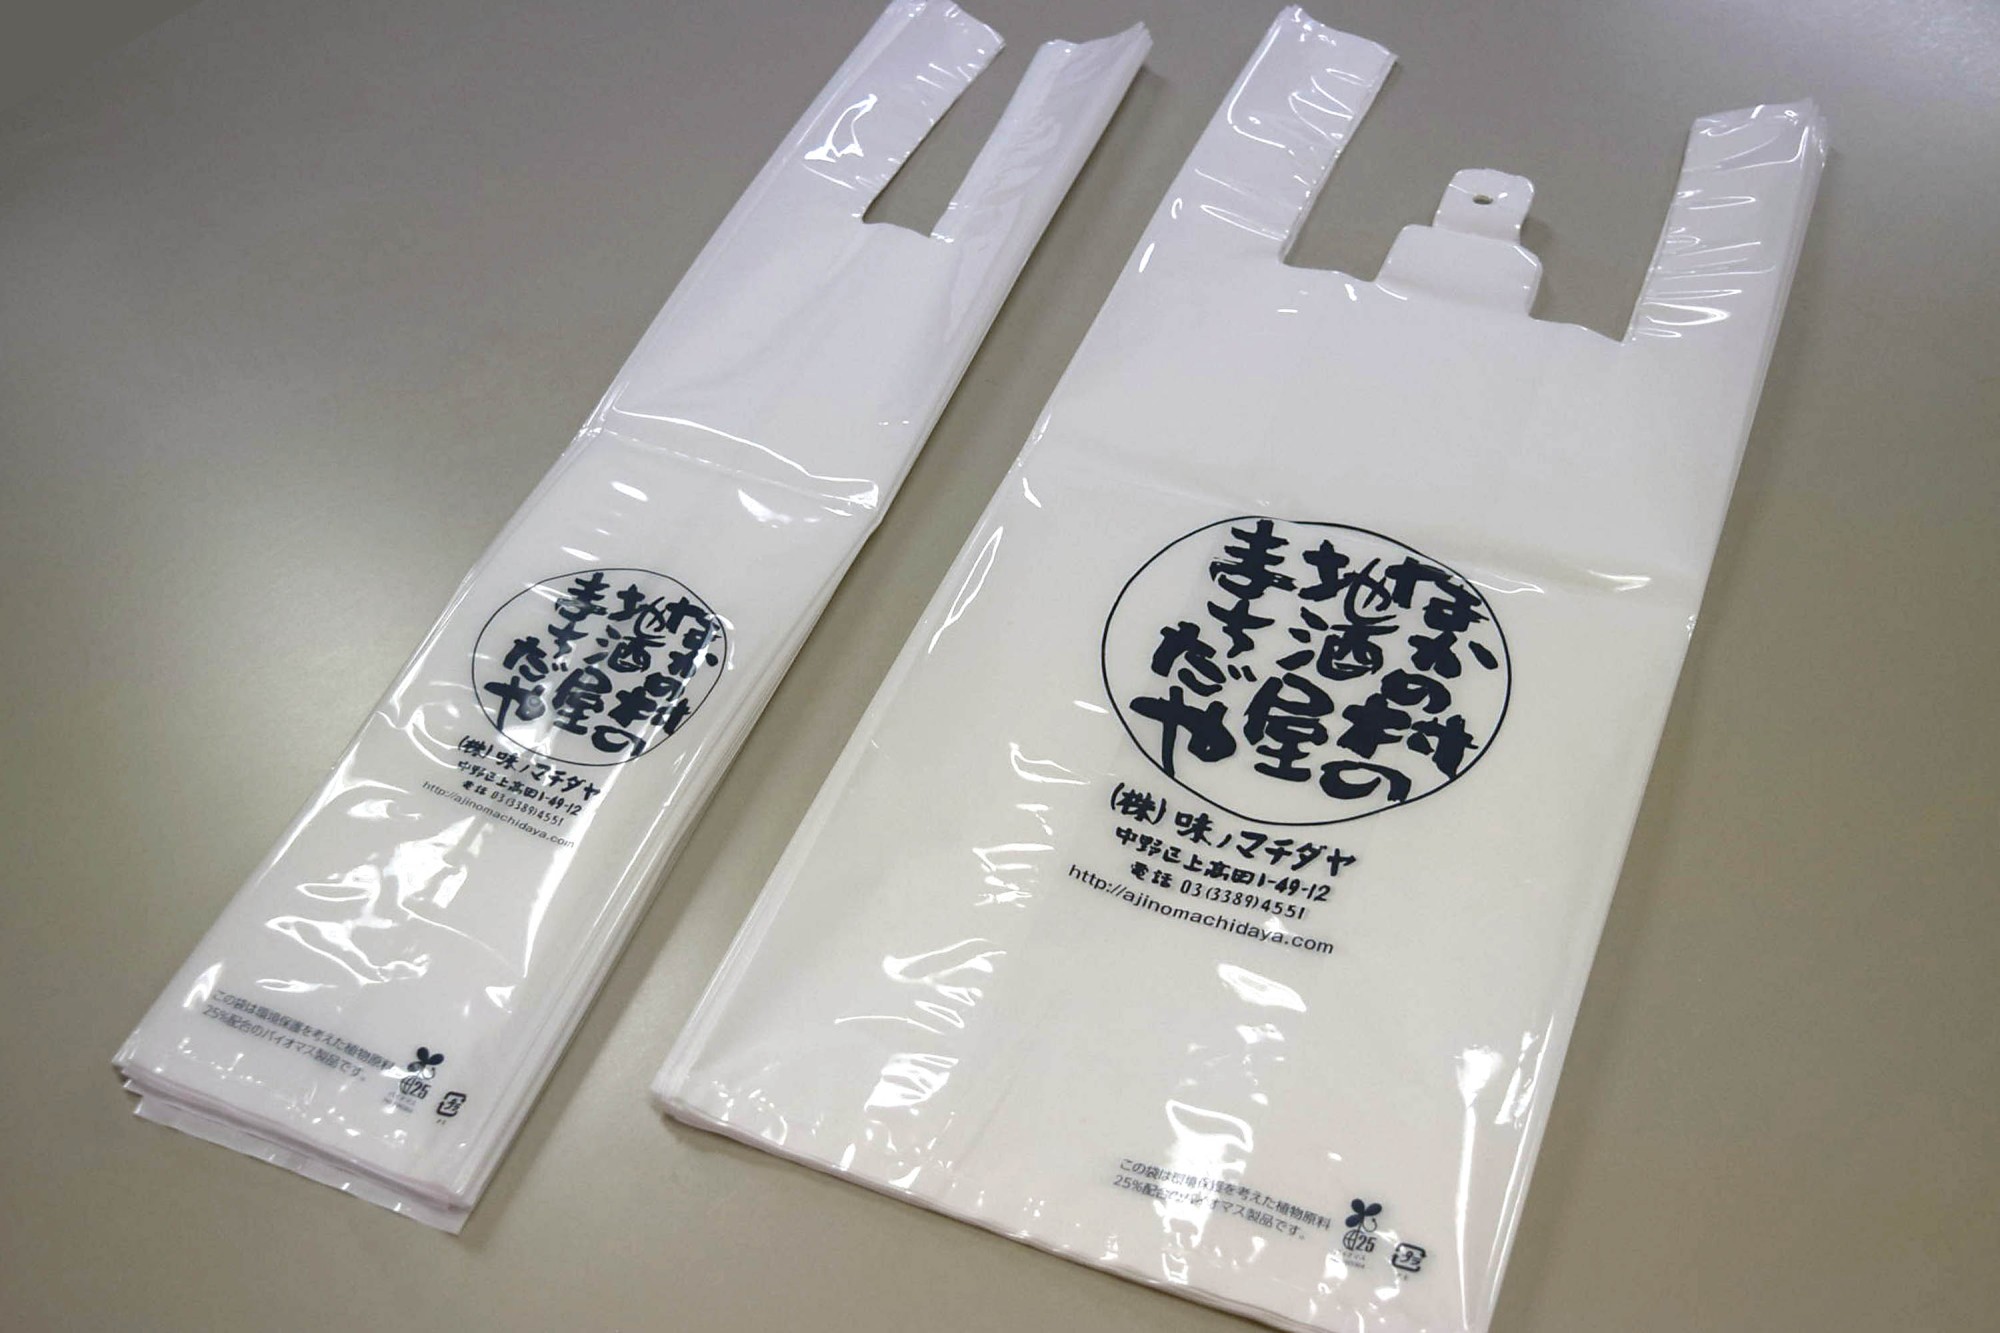 酒屋の持ち帰り用レジ袋。１本用と２本用のラインナップで、材質にバイオマスプラスチックを配合する事により、無料配布が可能です。